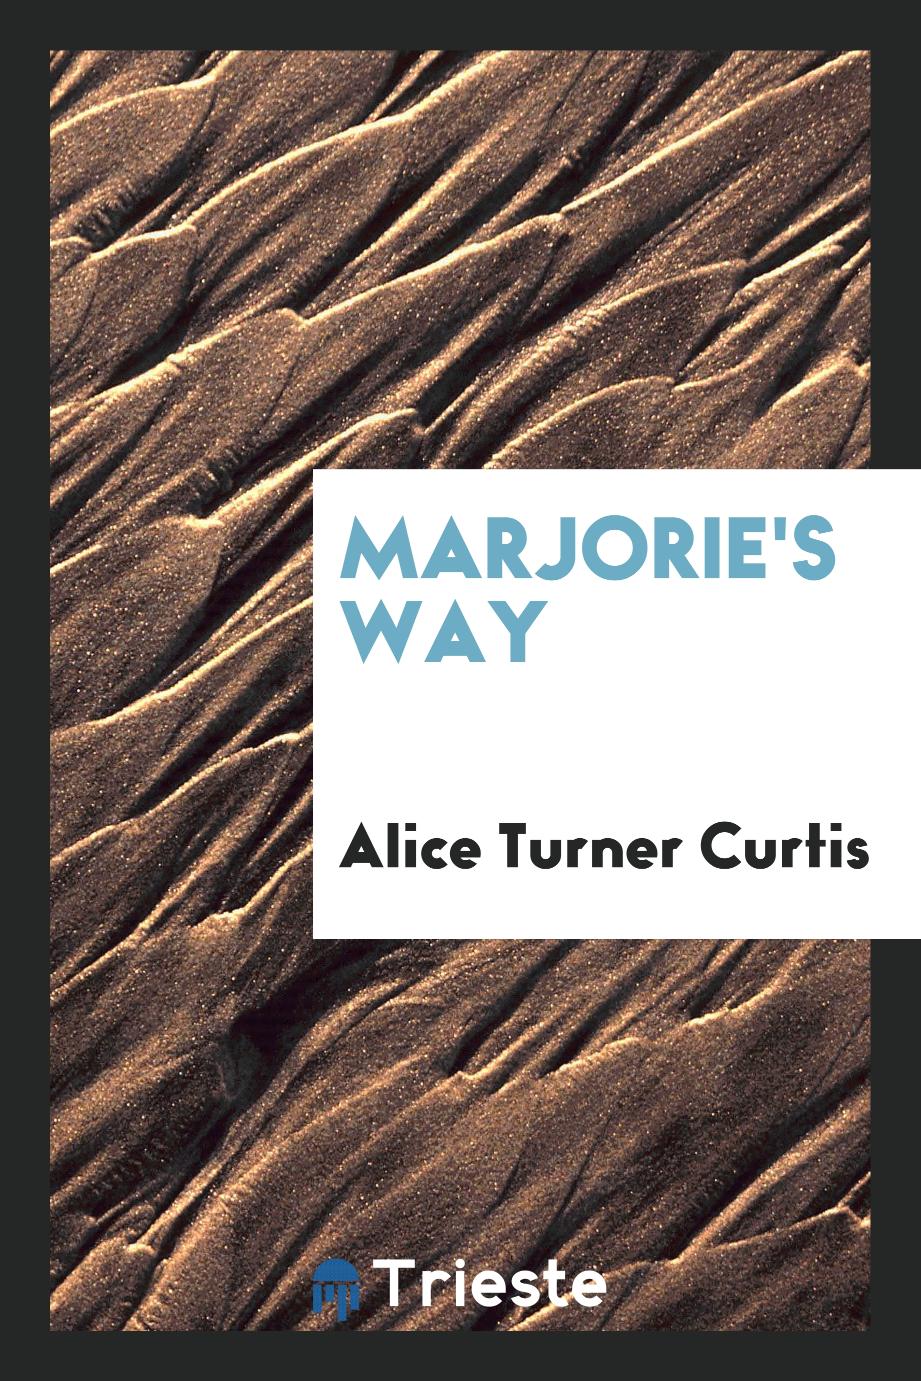 Marjorie's way